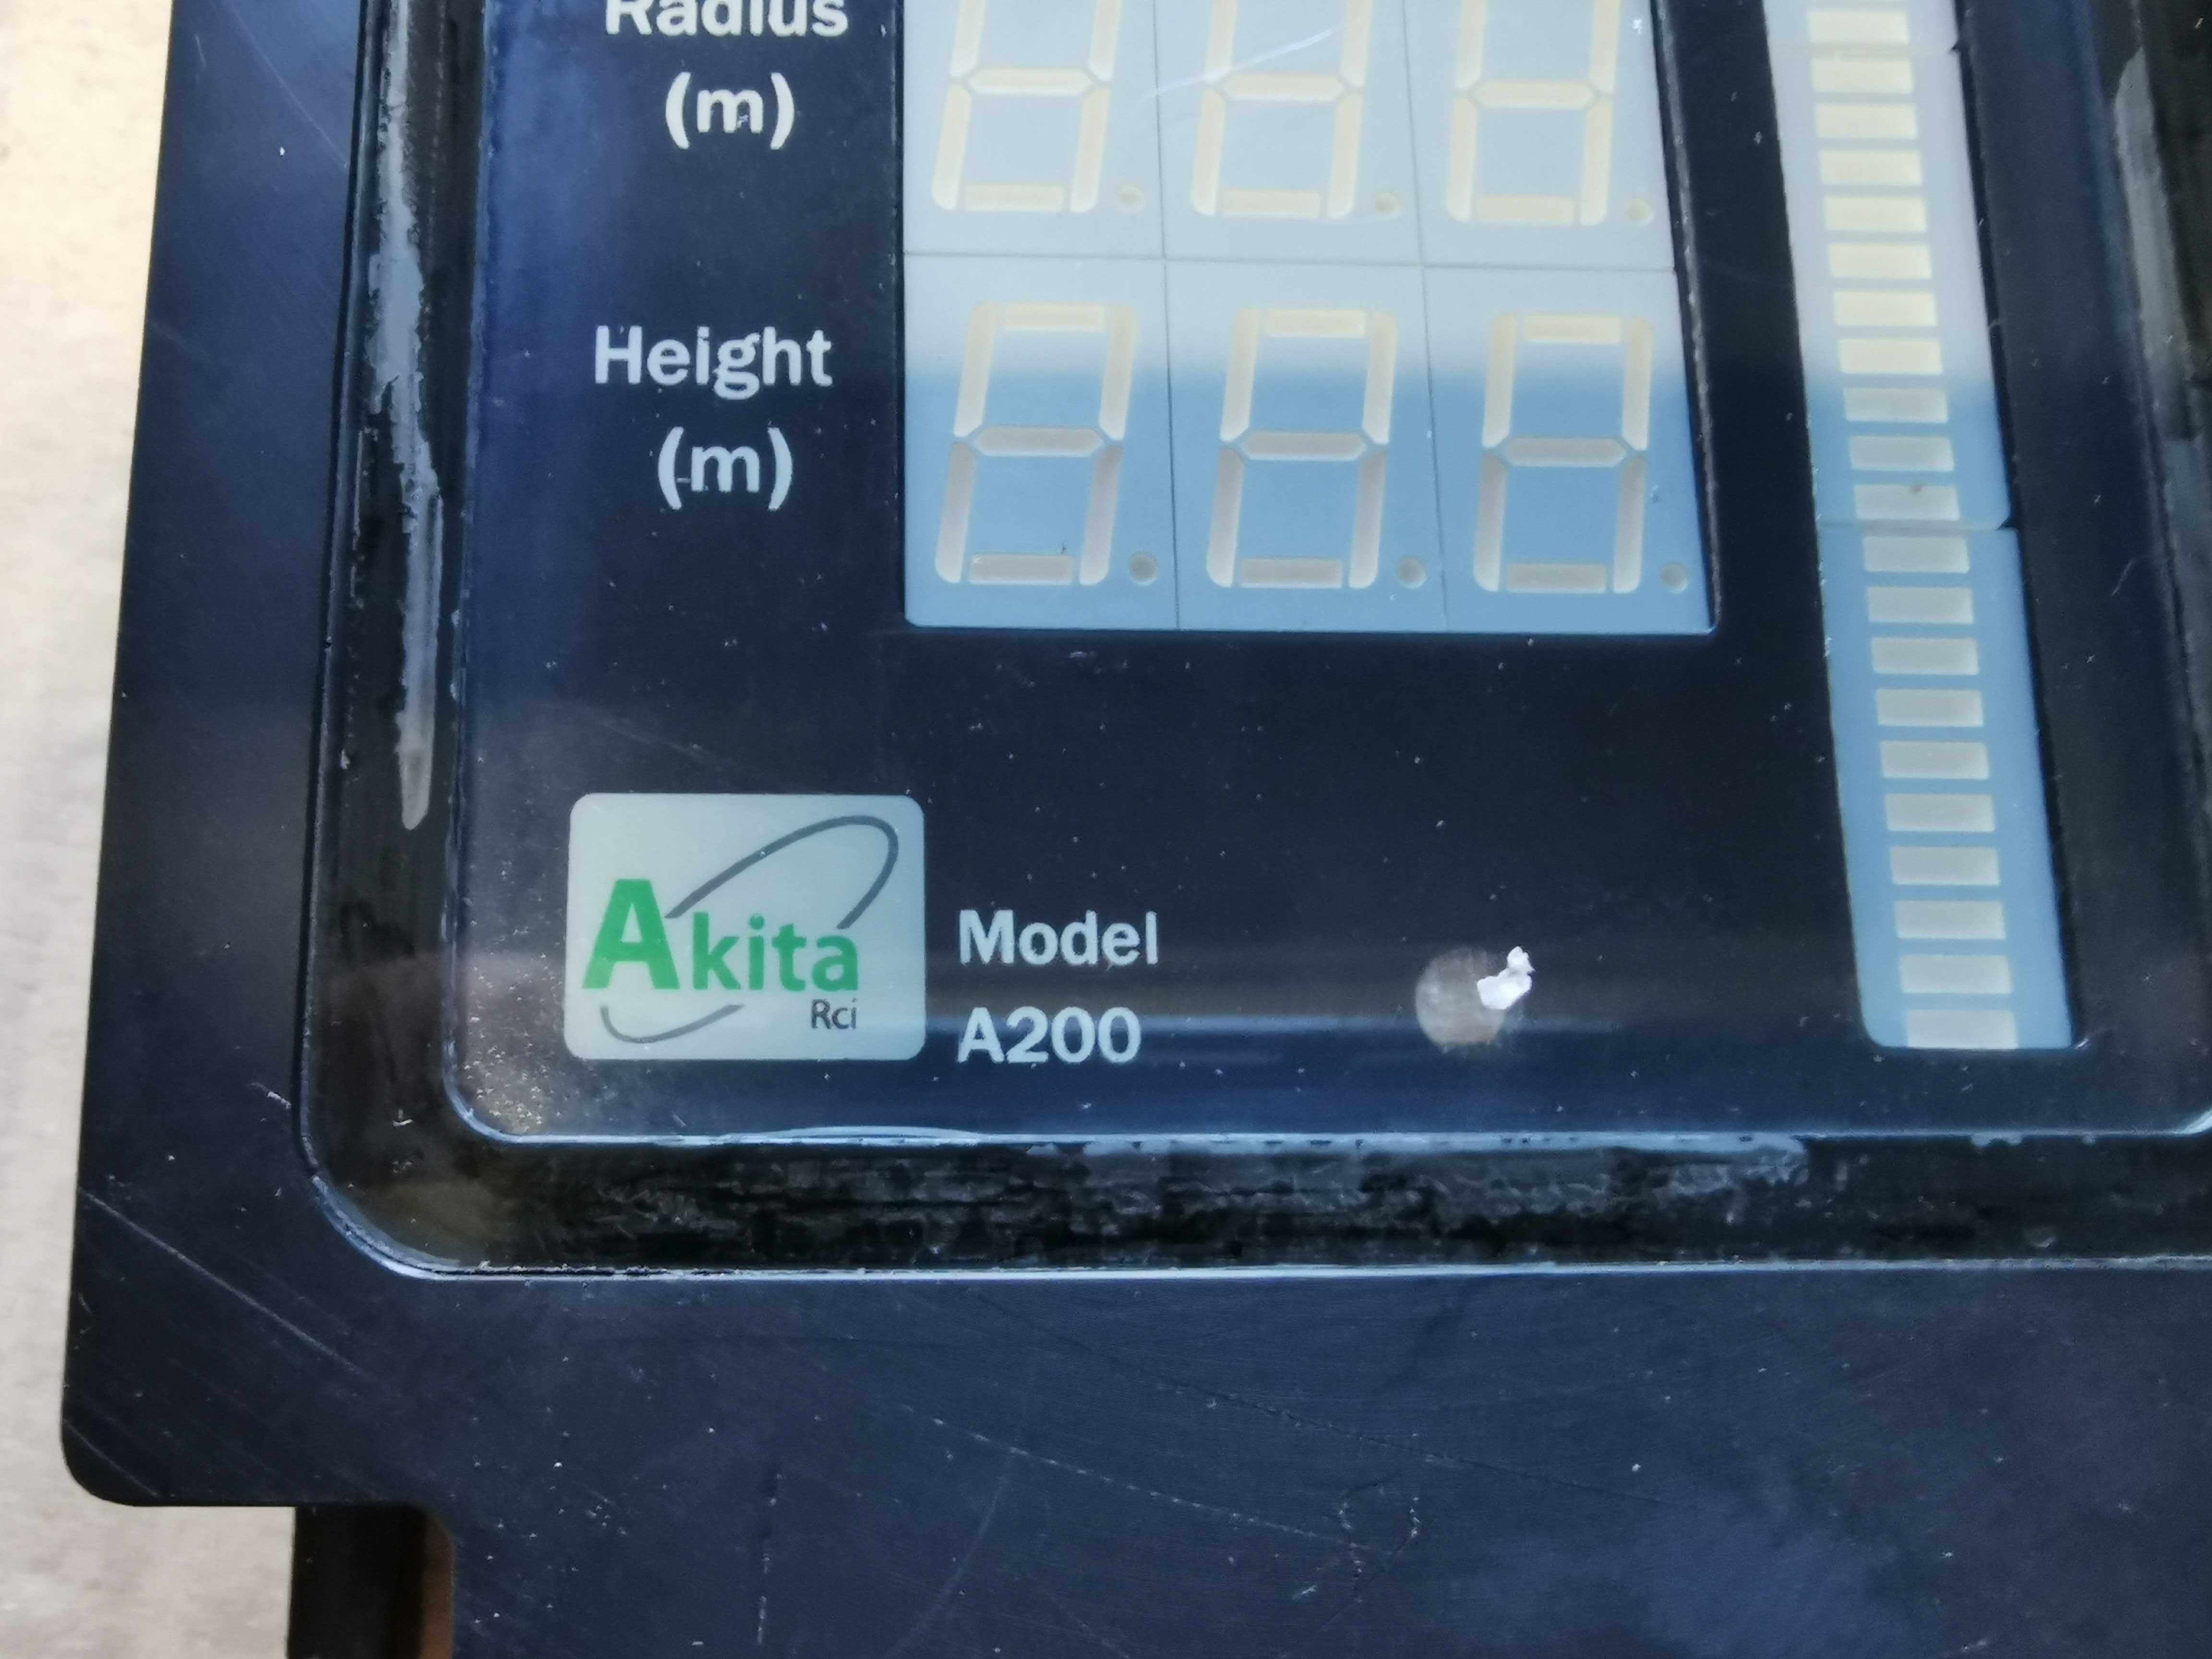 Wskaźnik udźwigu znamionowego (RCI) Akita A200